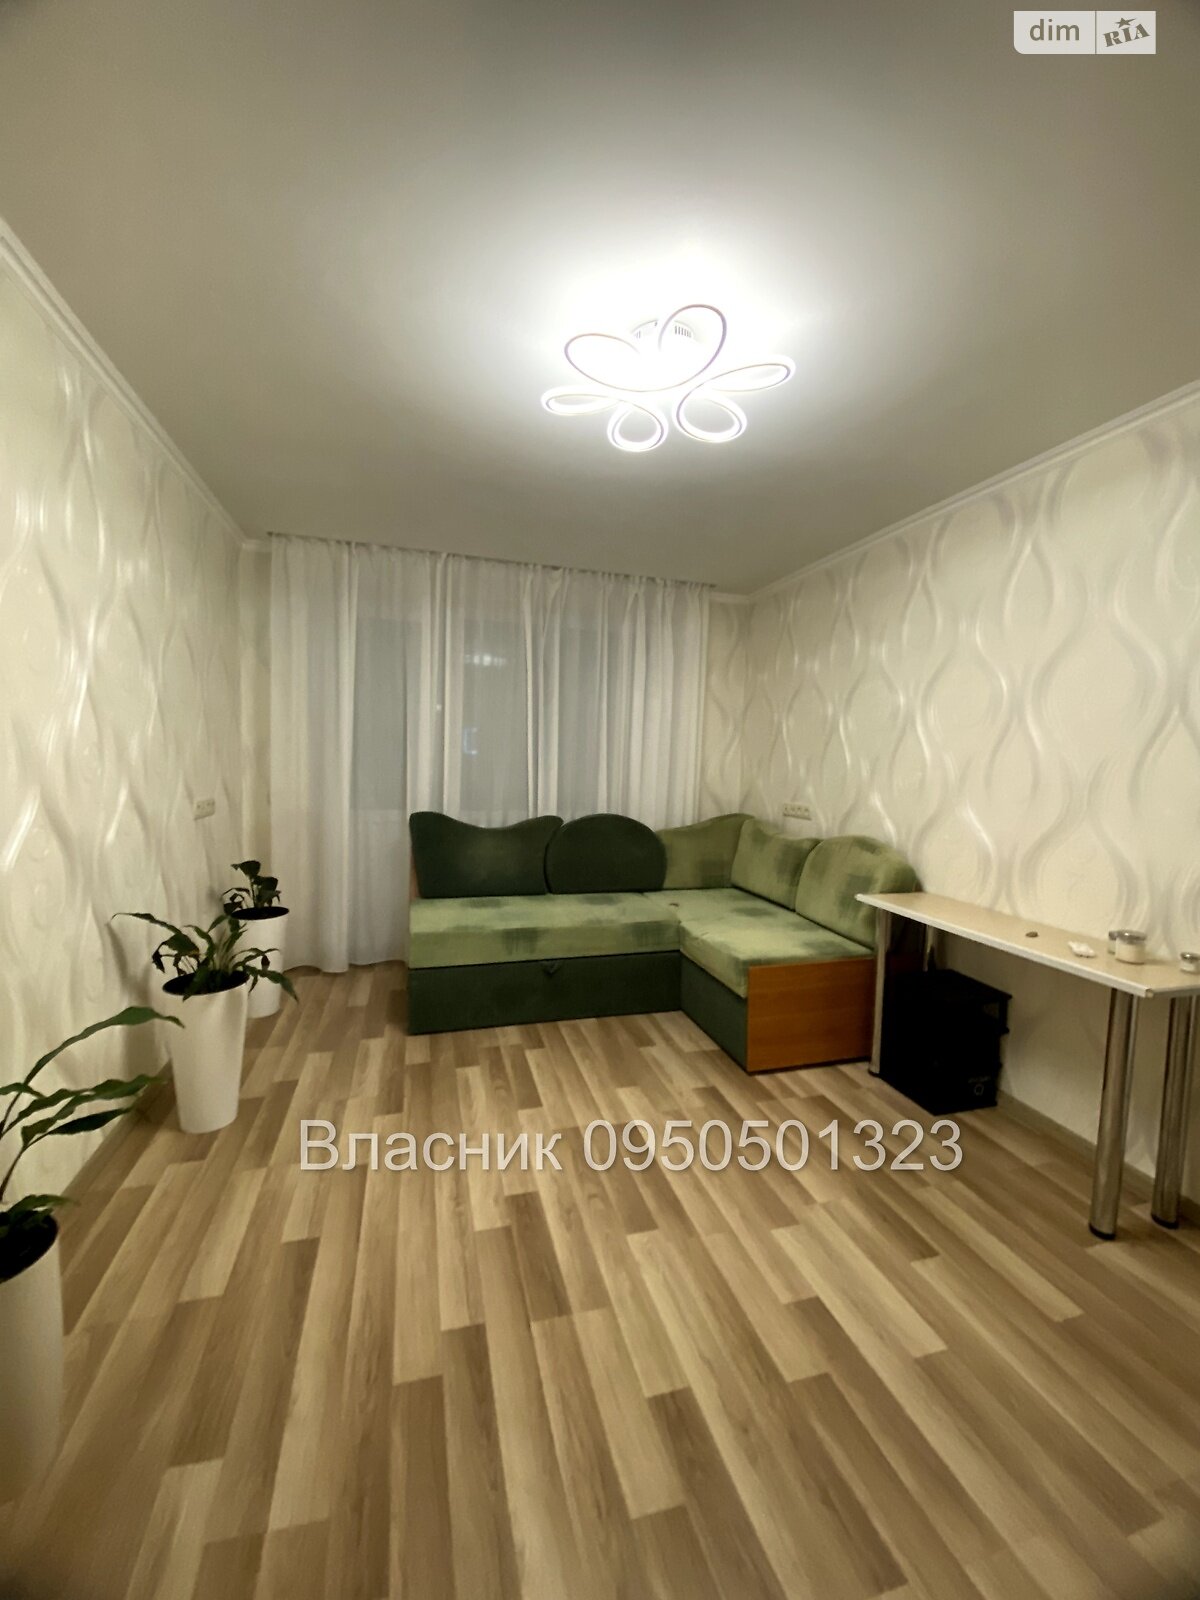 Продажа двухкомнатной квартиры в Полтаве, на ул. Баленко 12, кв. 18, район Браилки фото 1